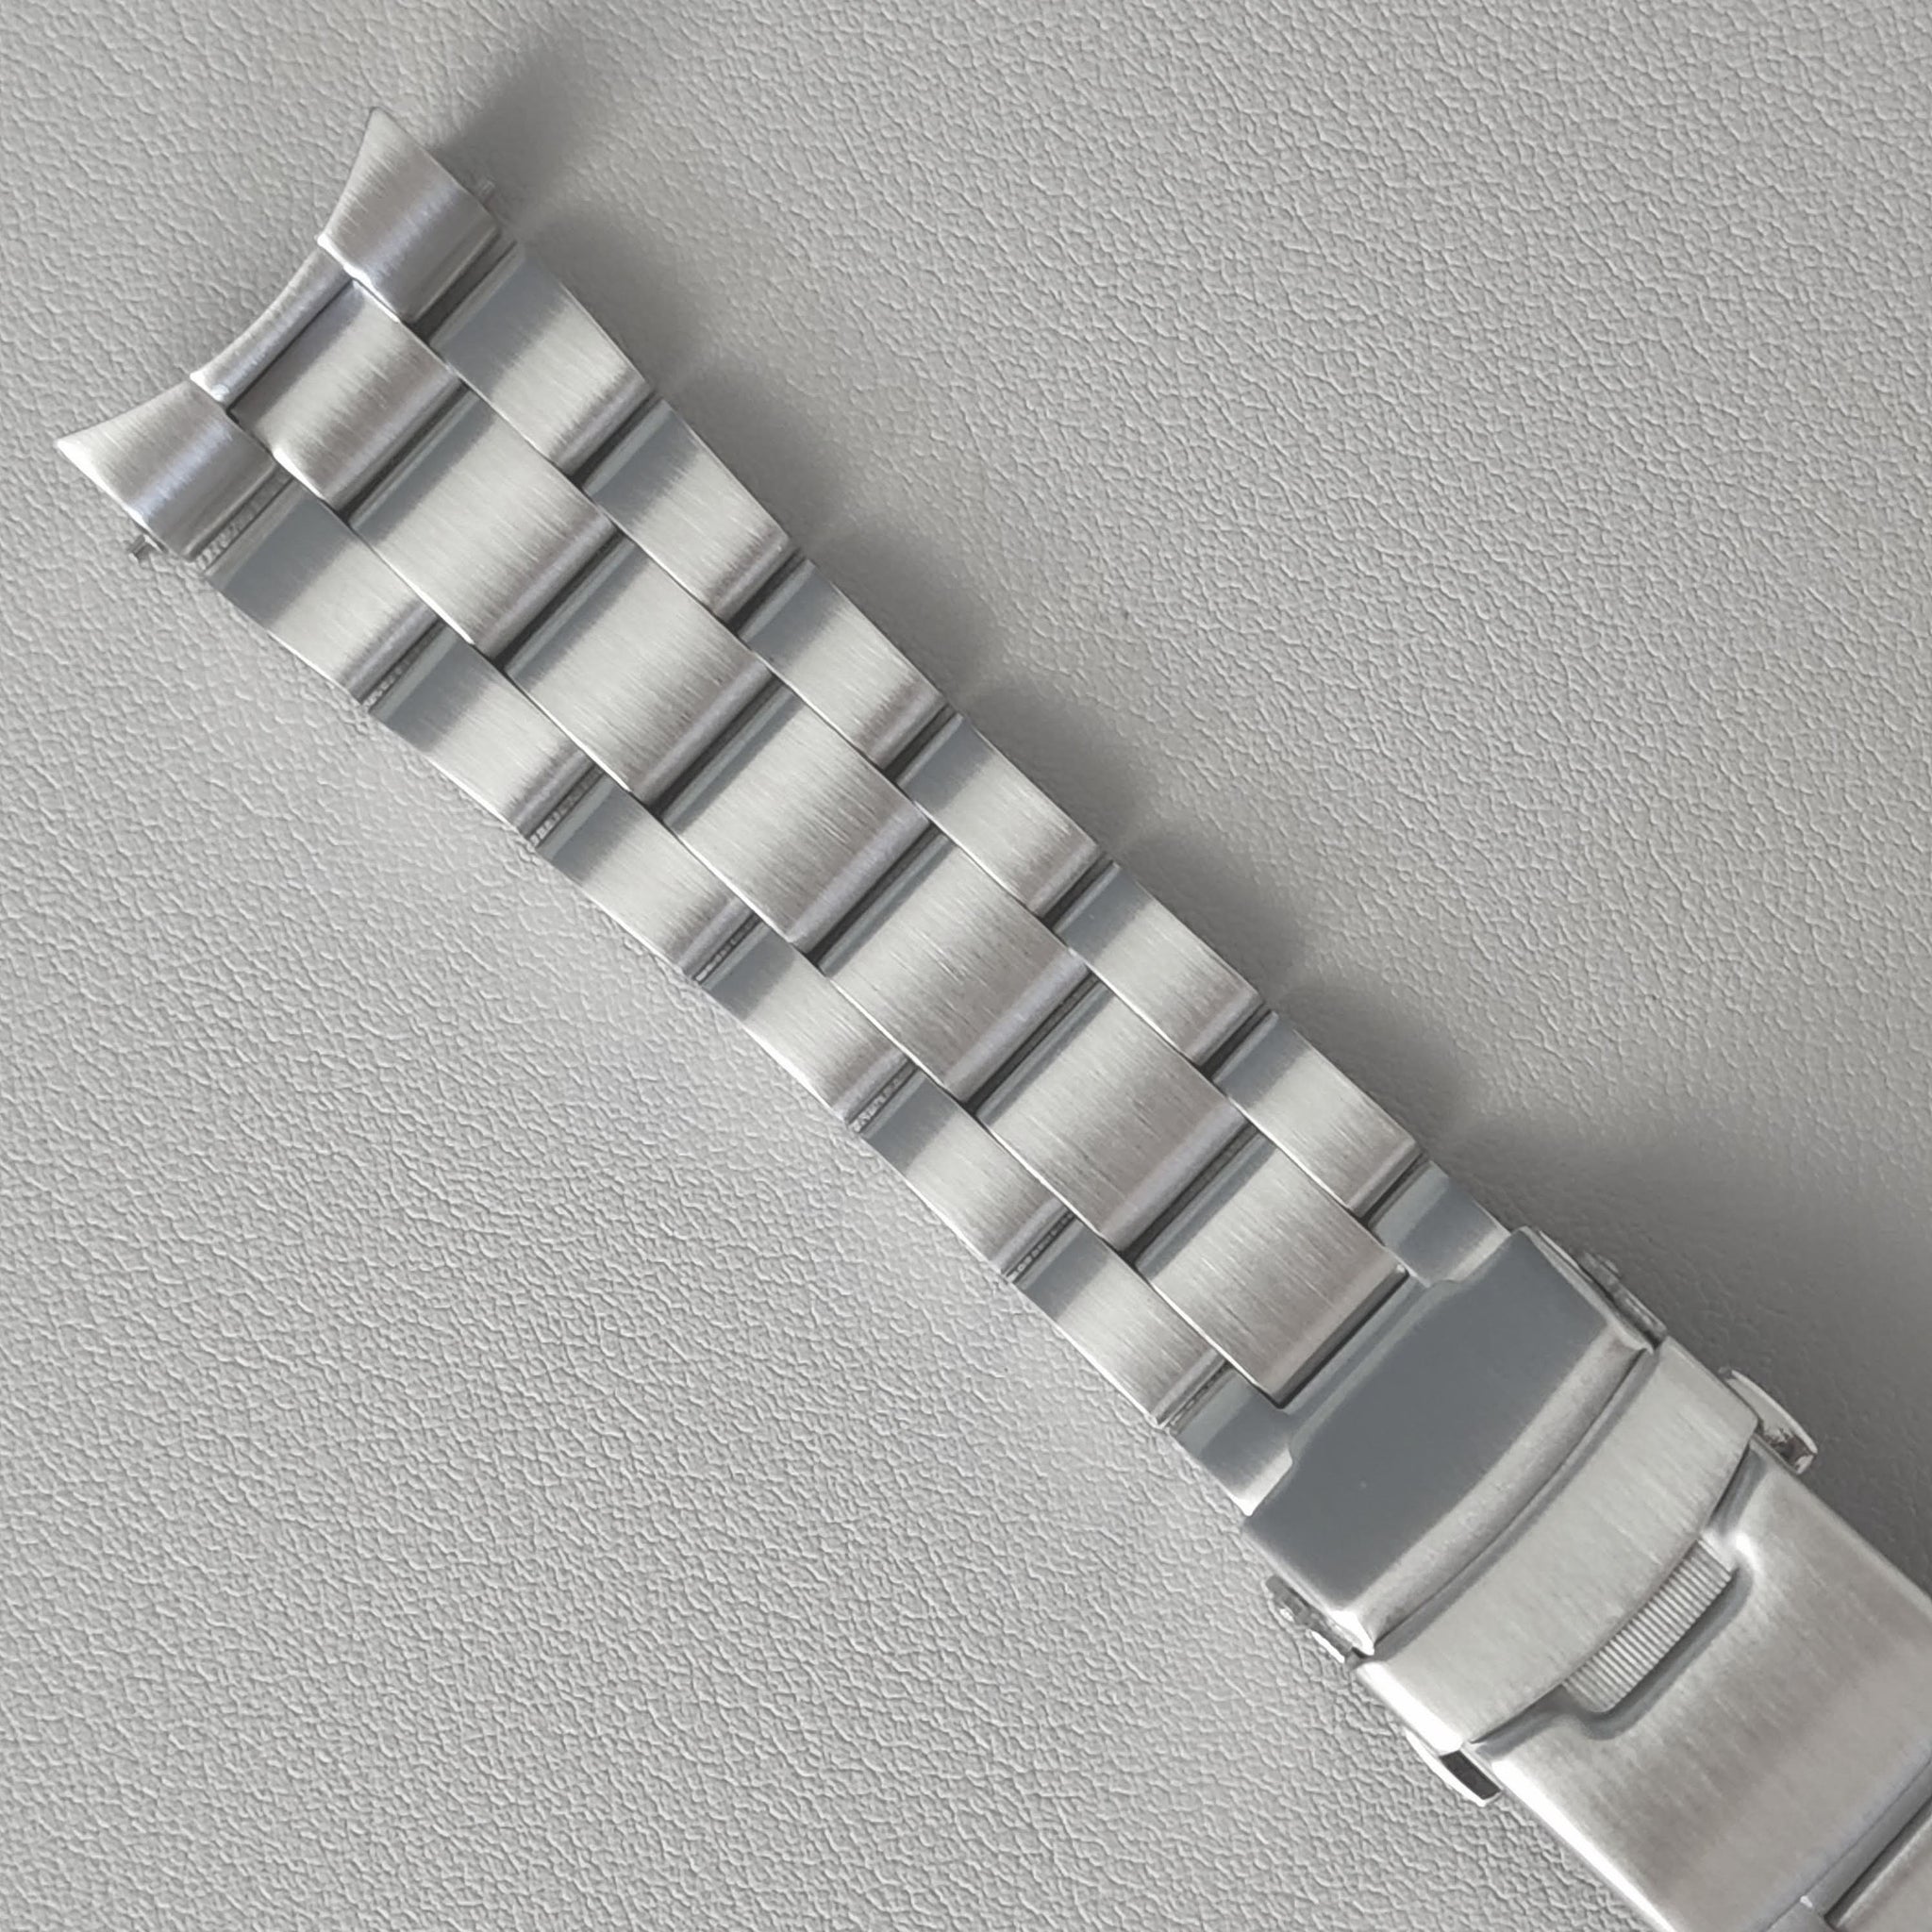 Bracelet SKX007 / Oyster Female Solid End Links –  - SEIKO MOD,  Mod Parts